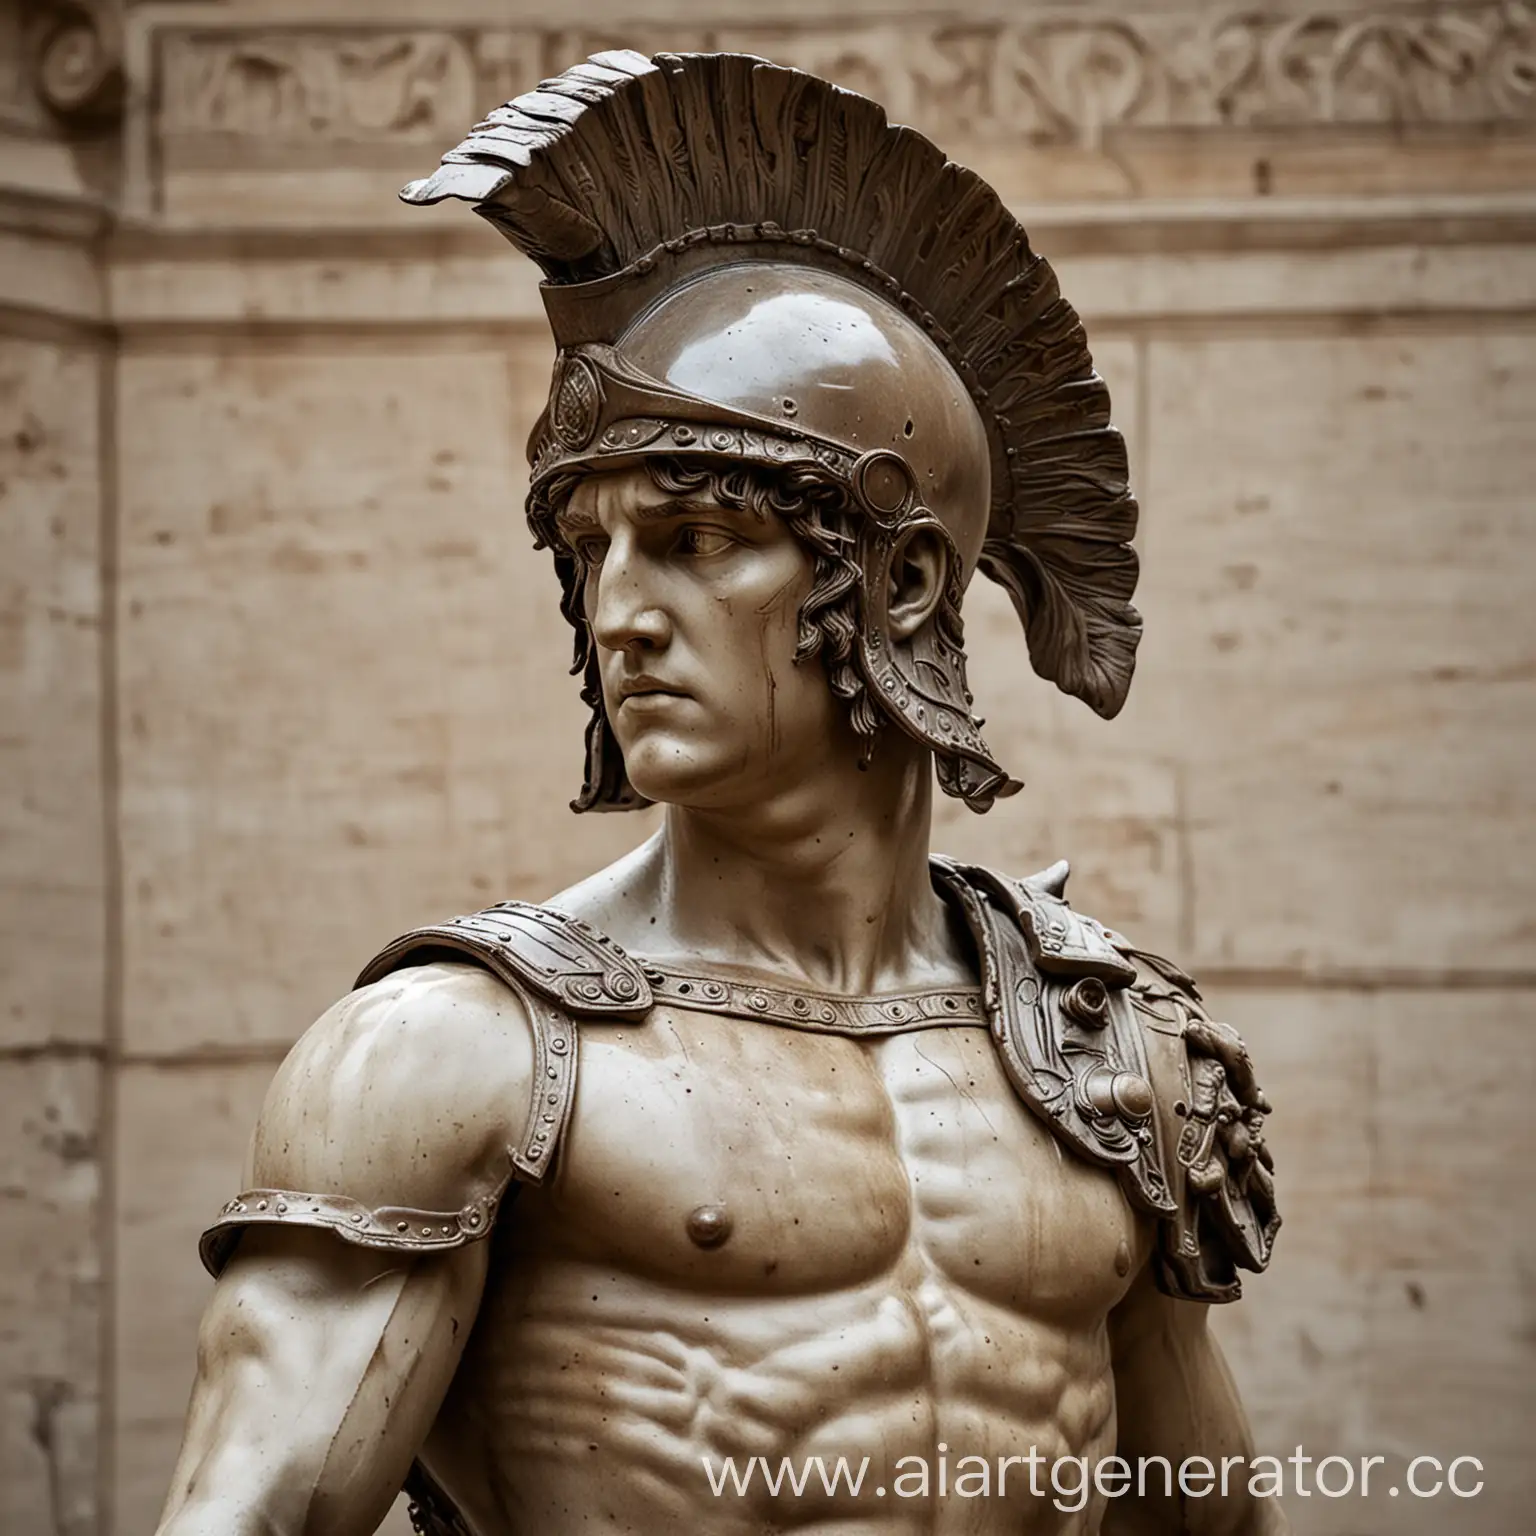 
Statue of Perseus in a Roman helmet